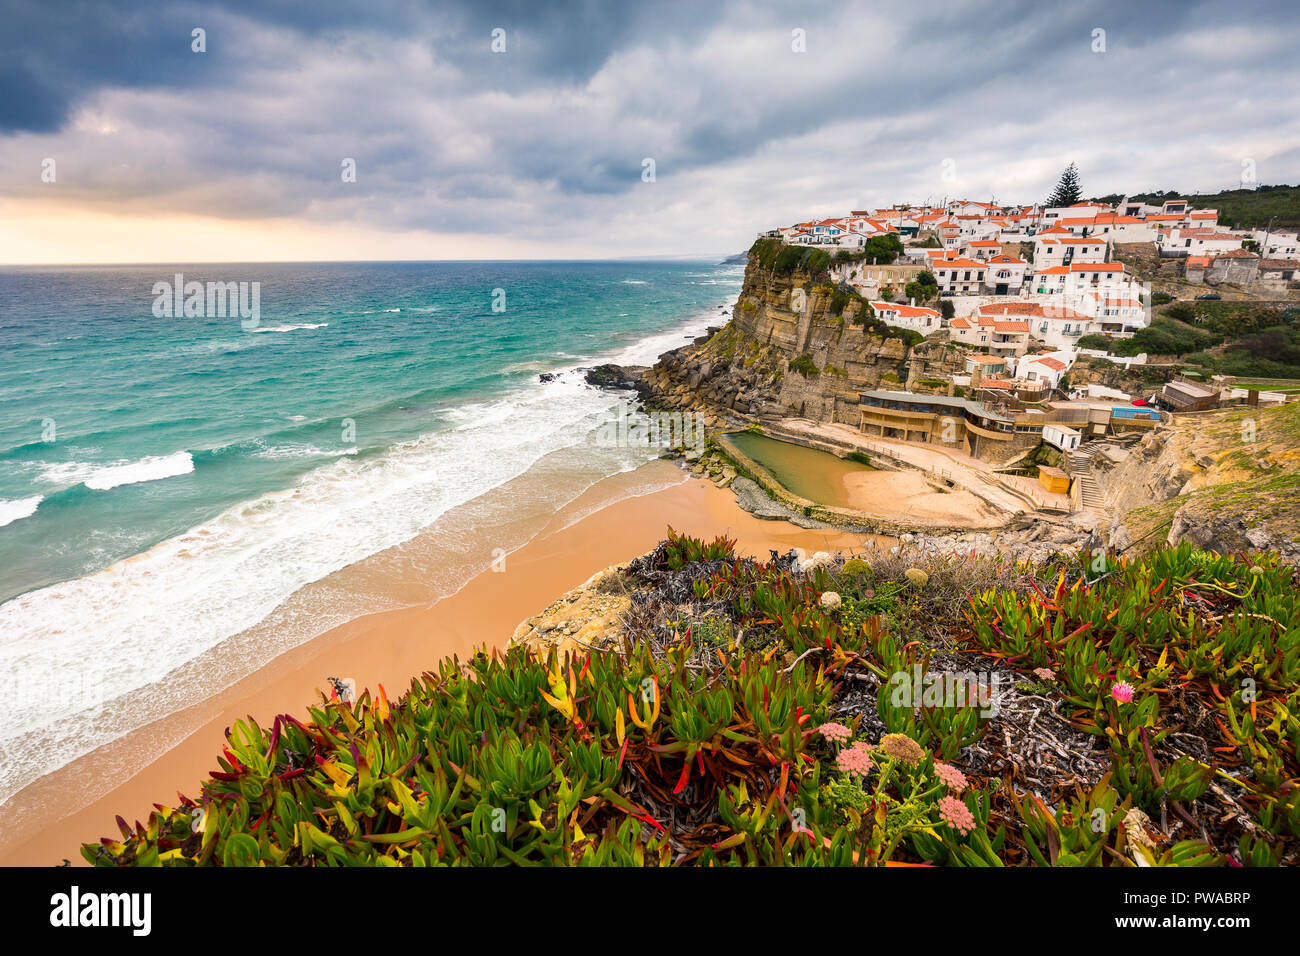 La popolare spiaggia cittadina Azenhas do Mar, vicino a Lisbona, Portogallo Foto Stock